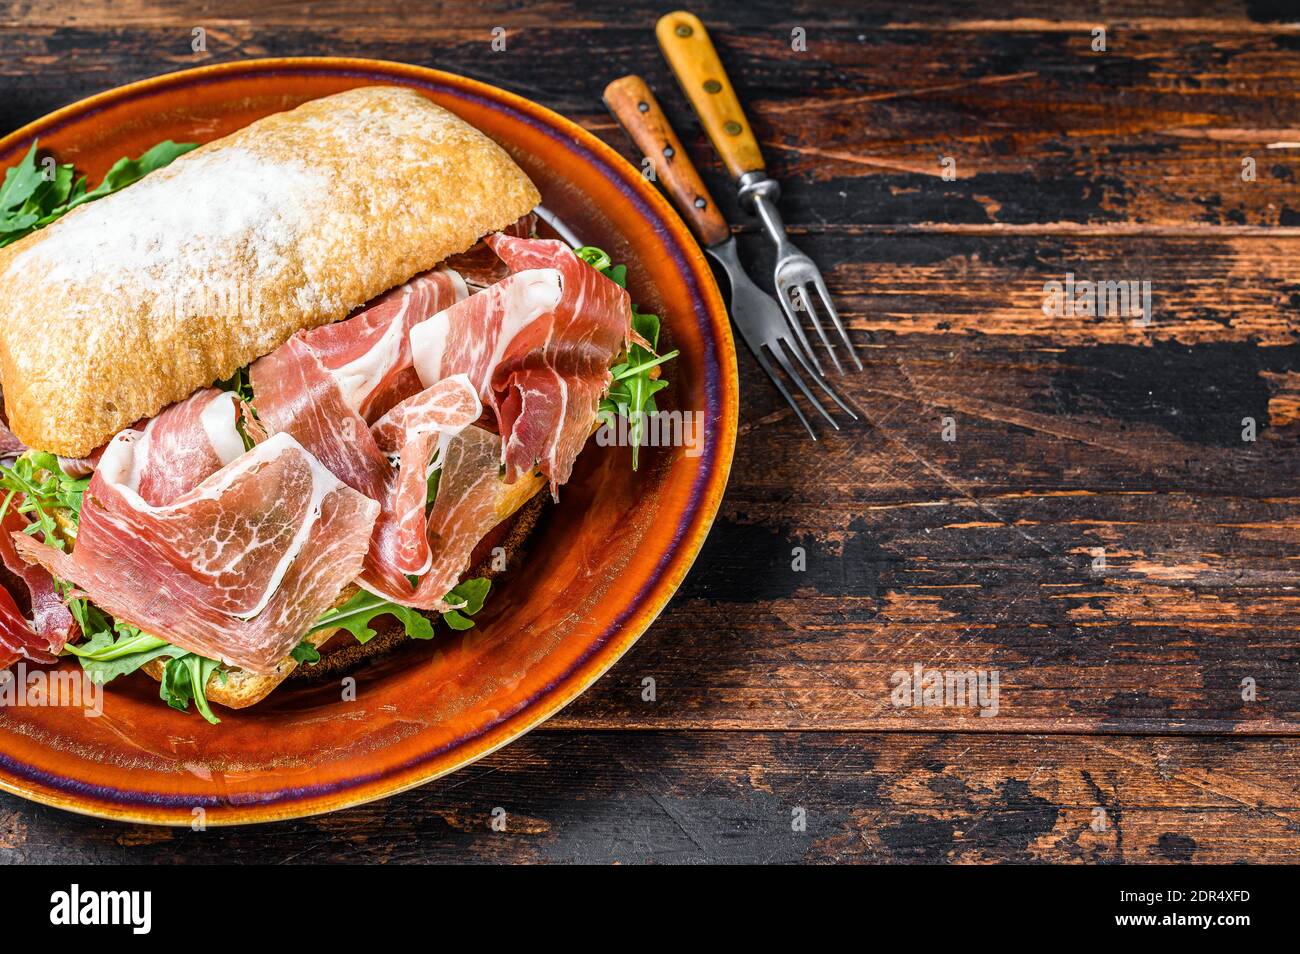 Spanish bocadillo de jamon, serrano ham sandwich on ciabatta bread with arugula. Dark wooden background. Top view. Copy space. Stock Photo